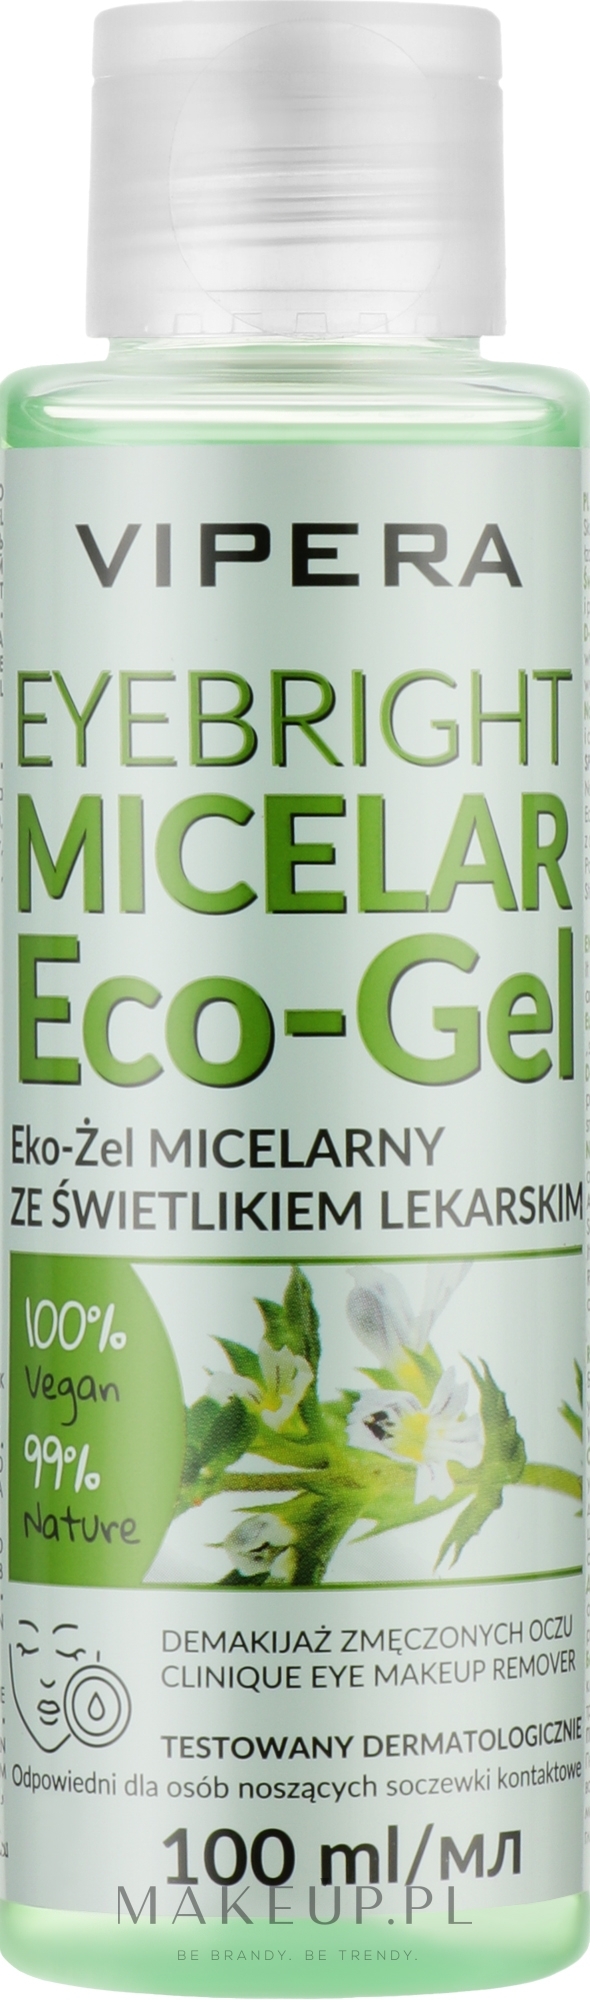 Micelarny eko-żel do demakijażu ze świetlikiem lekarskim - Vipera Eyebright Micellar Eco-Gel — Zdjęcie 100 ml